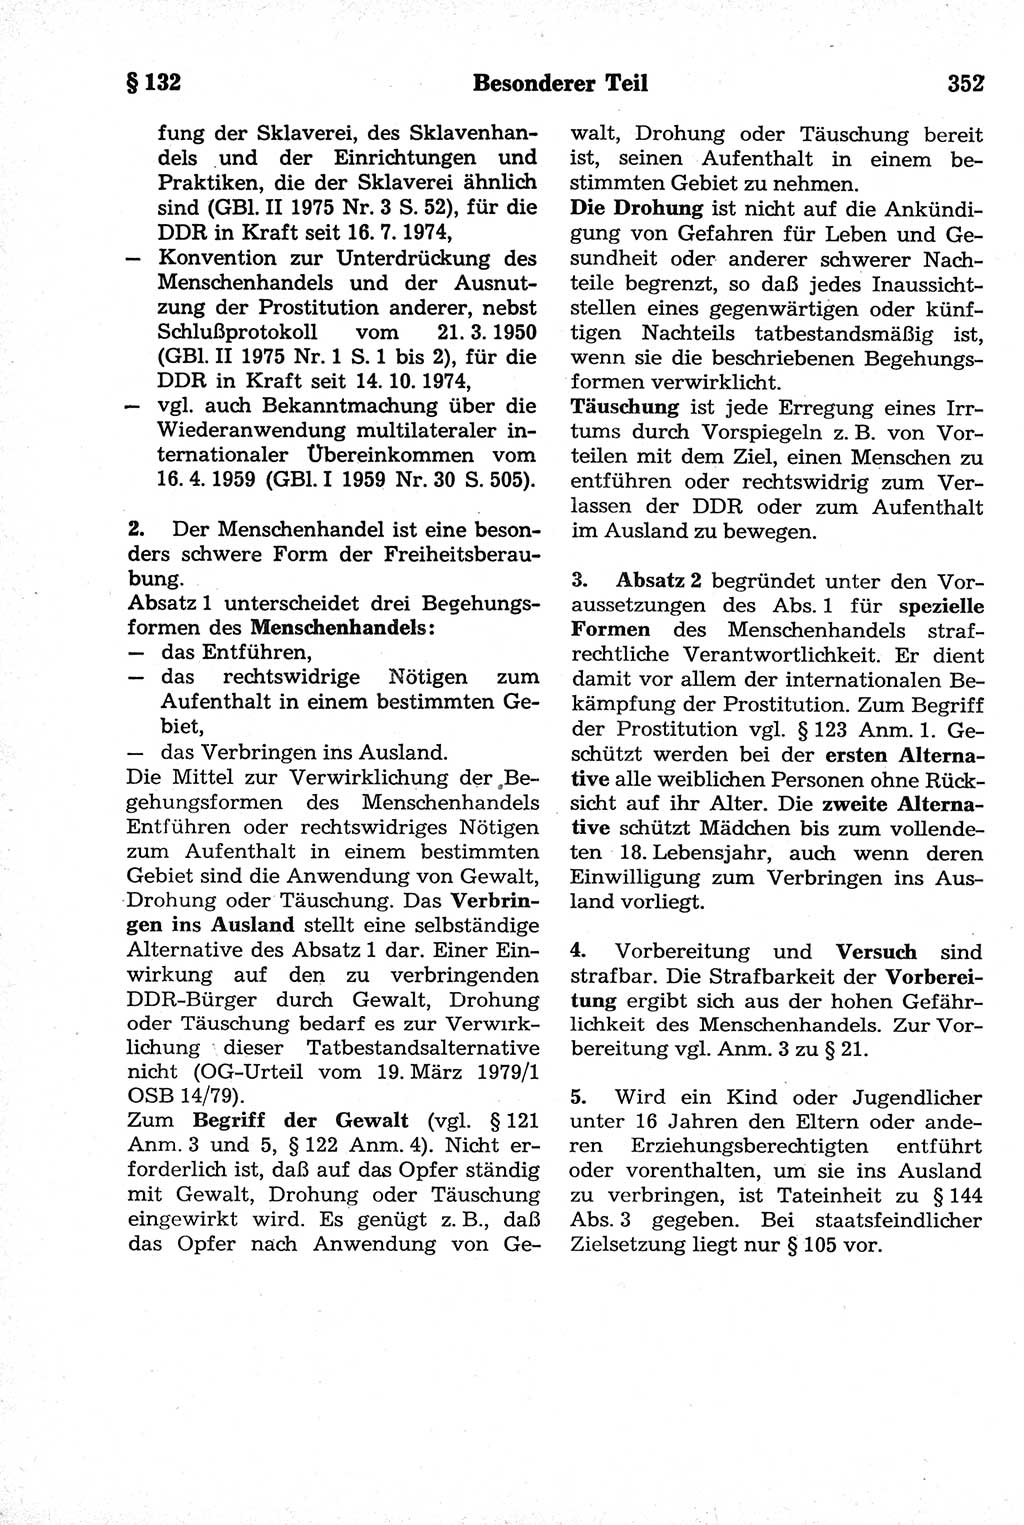 Strafrecht der Deutschen Demokratischen Republik (DDR), Kommentar zum Strafgesetzbuch (StGB) 1981, Seite 352 (Strafr. DDR Komm. StGB 1981, S. 352)